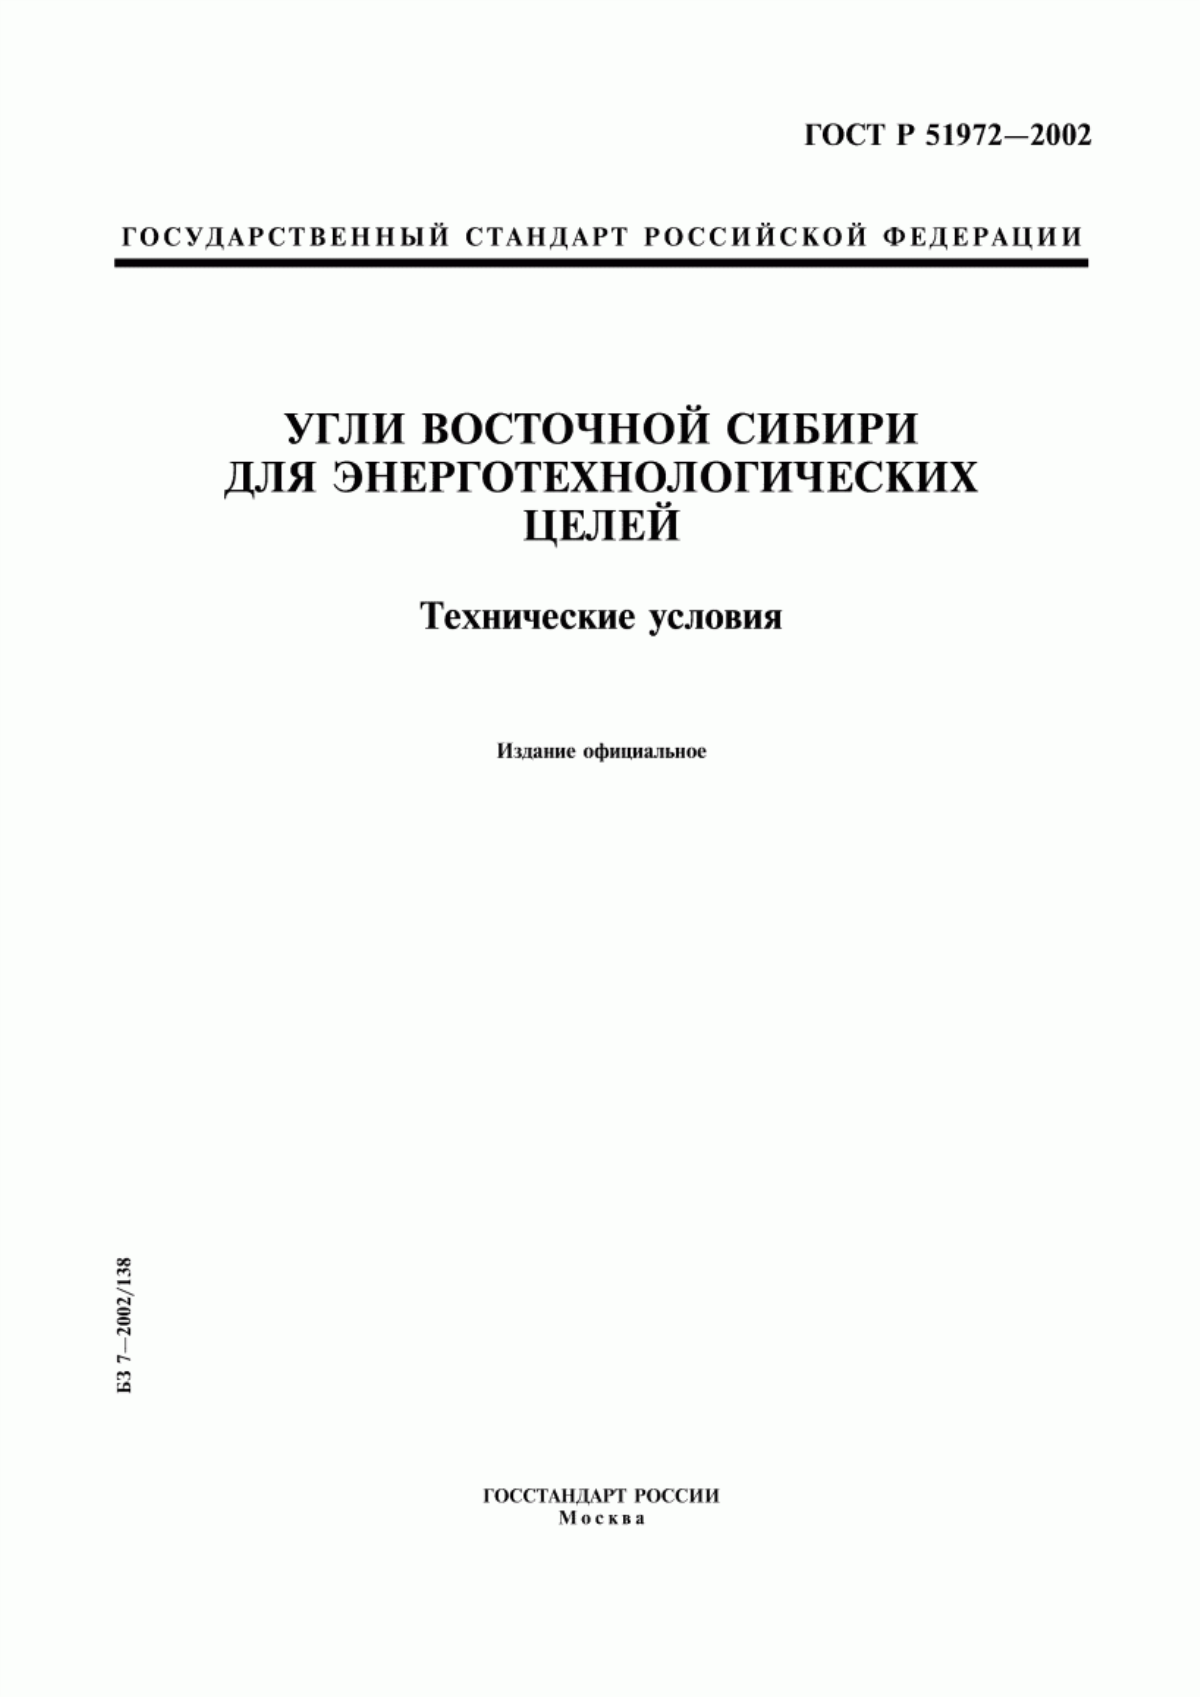 ГОСТ Р 51972-2002 Угли Восточной Сибири для энерготехнологических целей. Технические условия